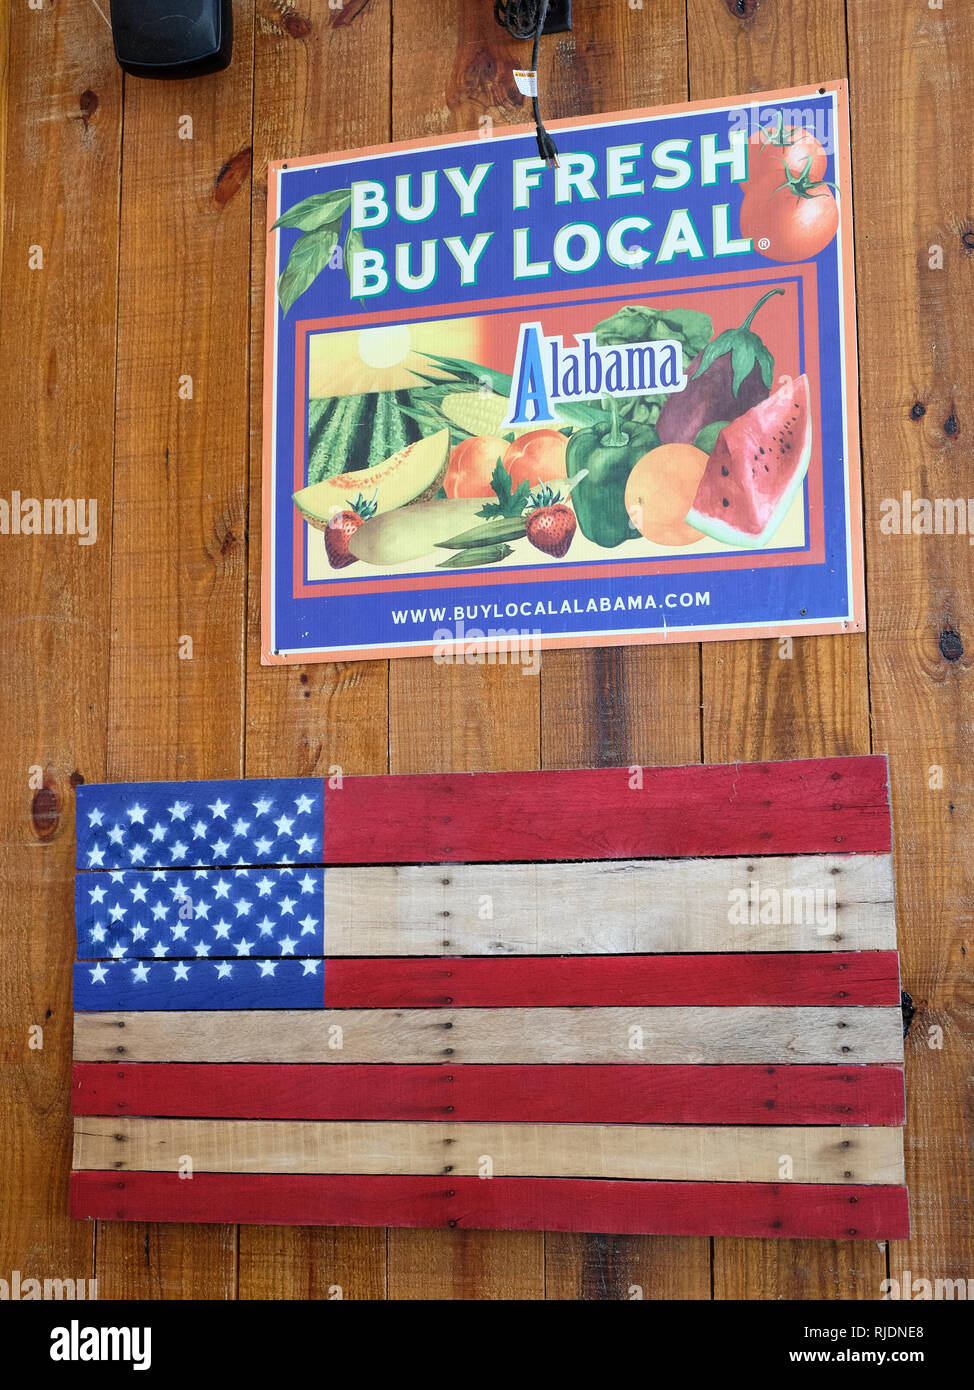 Acquistare Acquistare fresco segno locale promuovendo Alabama agricoltura al di sopra di una bandiera americana dipinta su legno in una zona rurale Alabama farm Mercato di Pike Road Alabama, STATI UNITI D'AMERICA Foto Stock